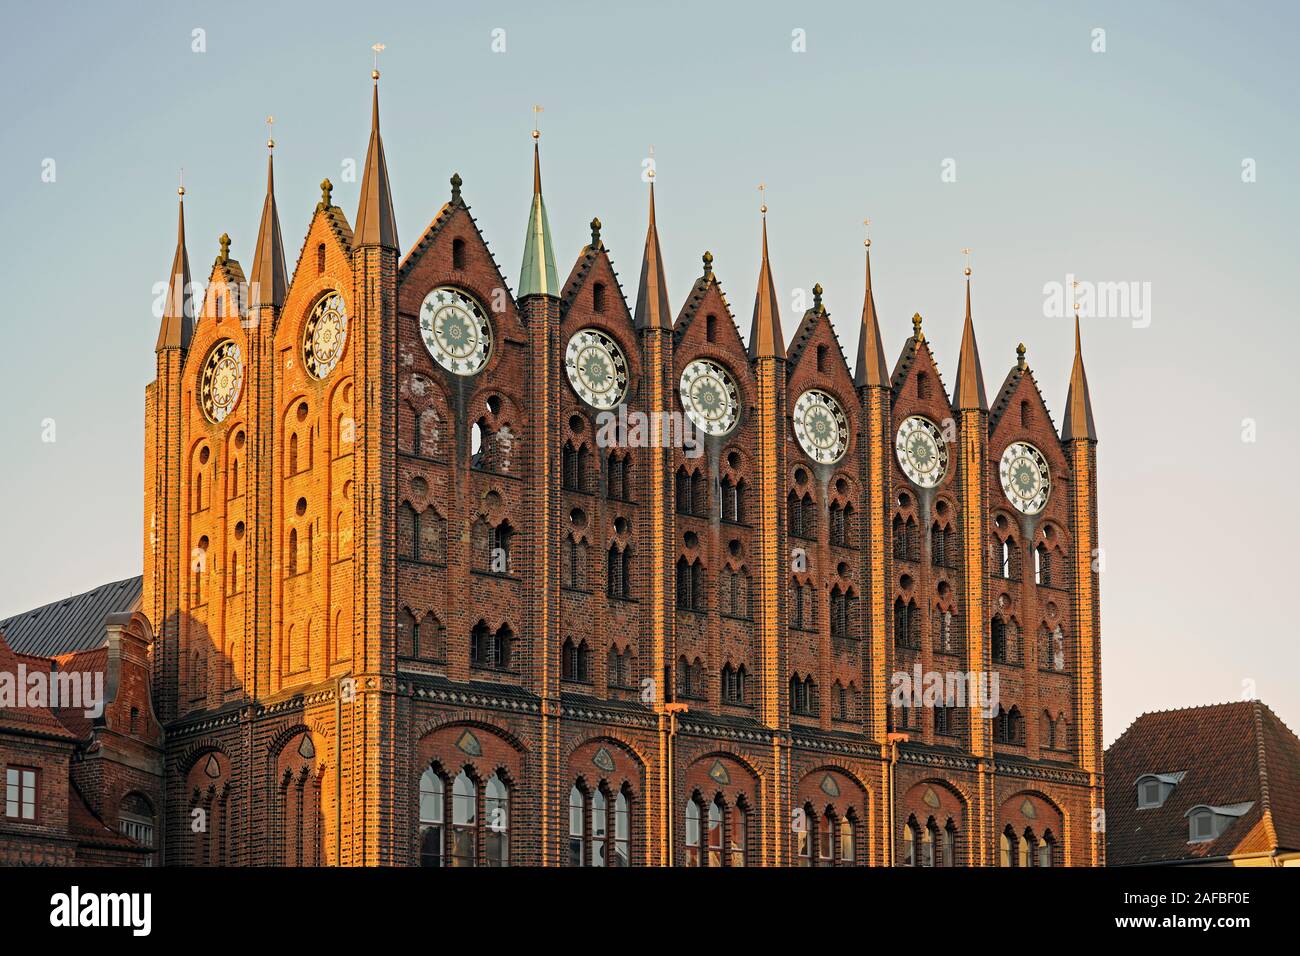 Fassade des Rathaus Stralsund am Morgen, Altstadt, Alter Markt, Unesco Weltkulturerbe, Mecklenburg Vorpommern, Deutschland, Europa , oeffentlicher G Foto Stock